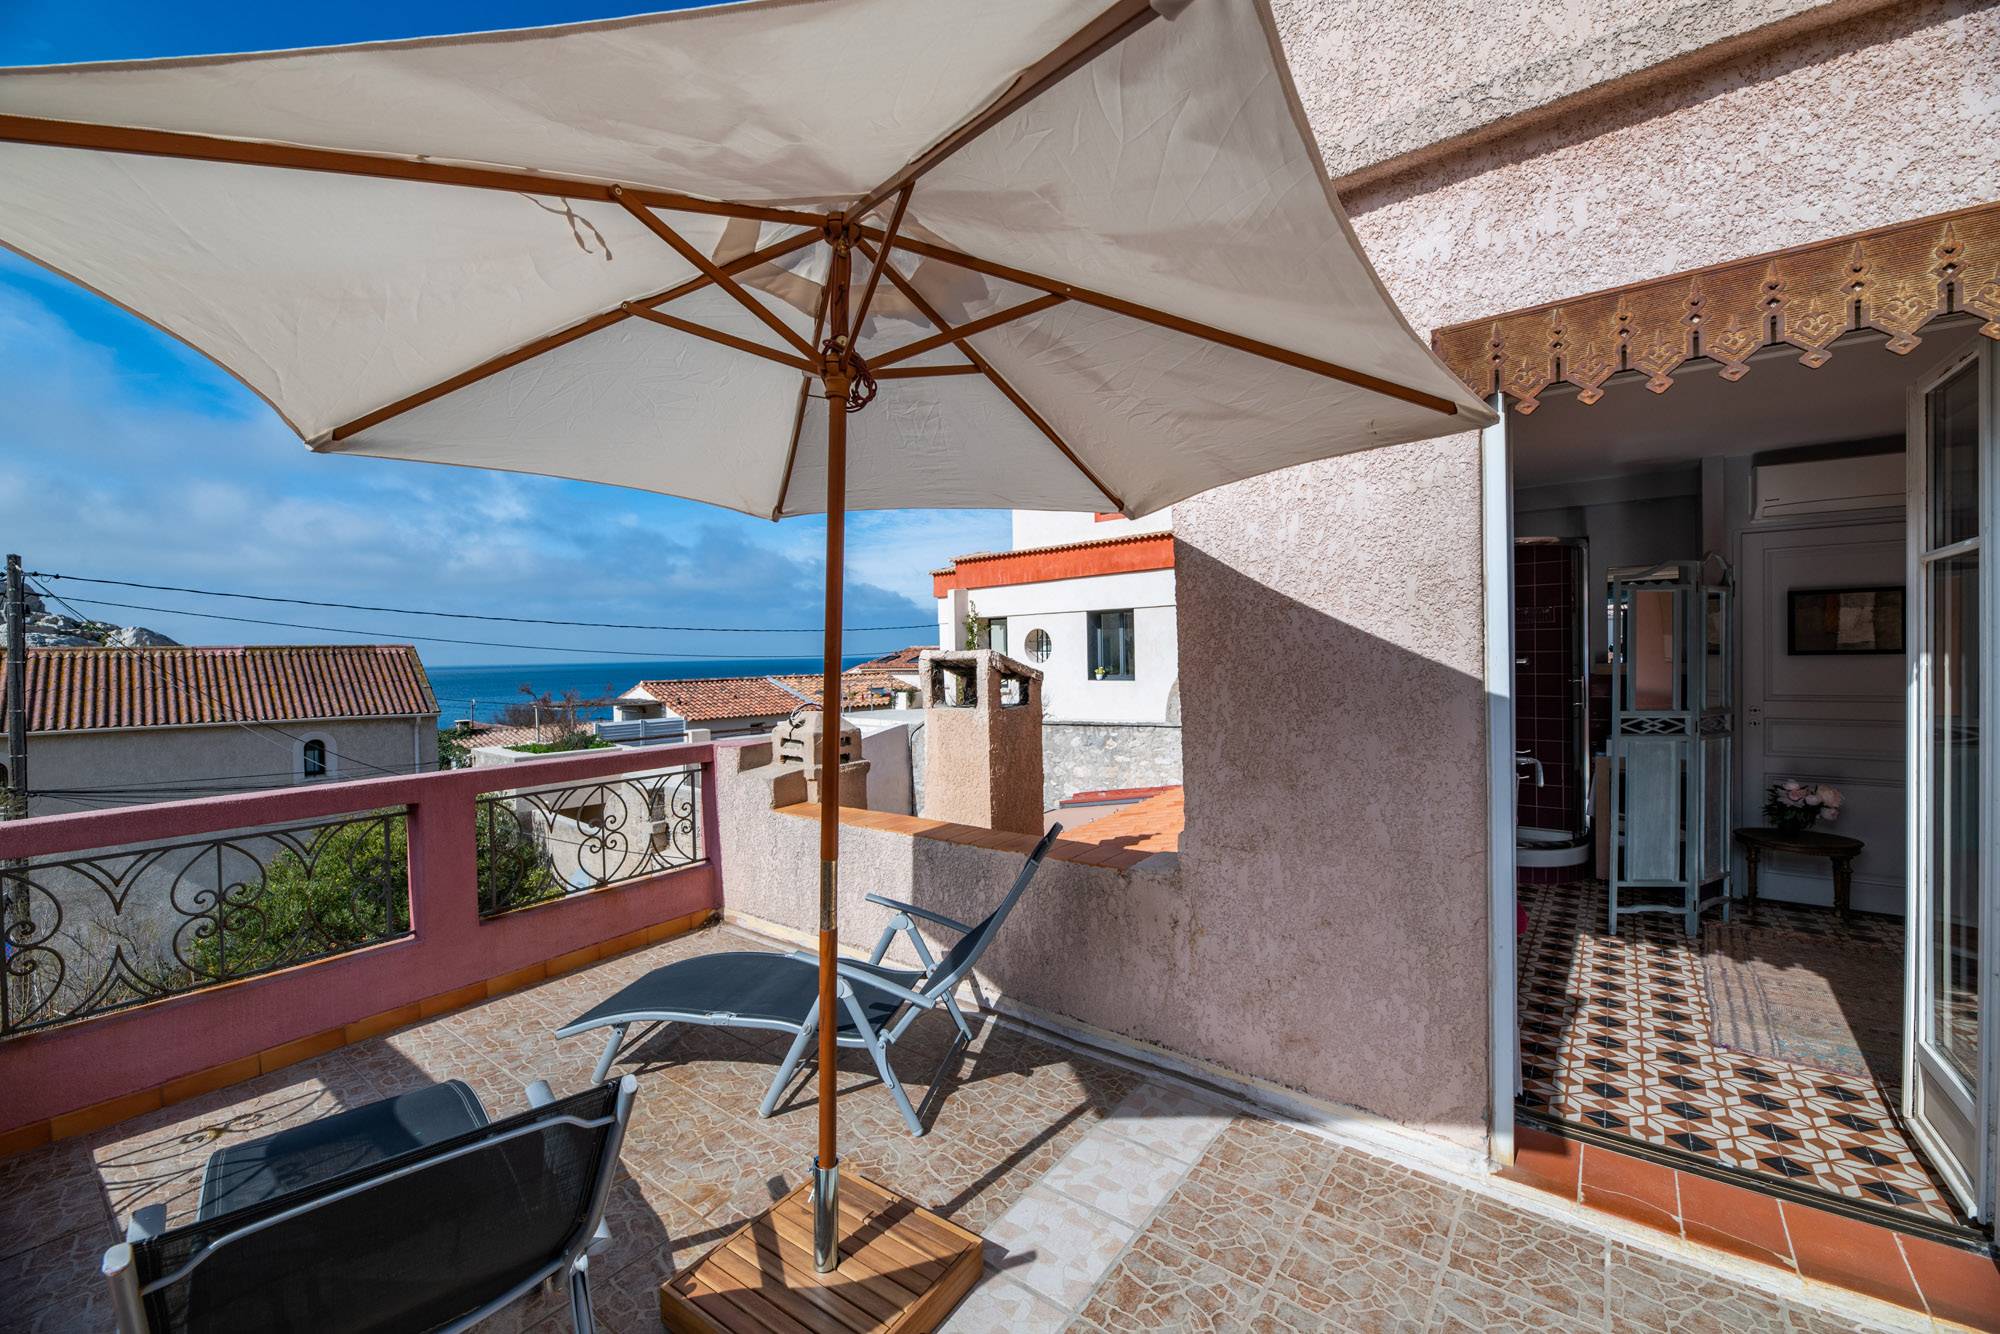 Marseille location chambre d'hôtes calanques proche de la mer avec terrasse privée